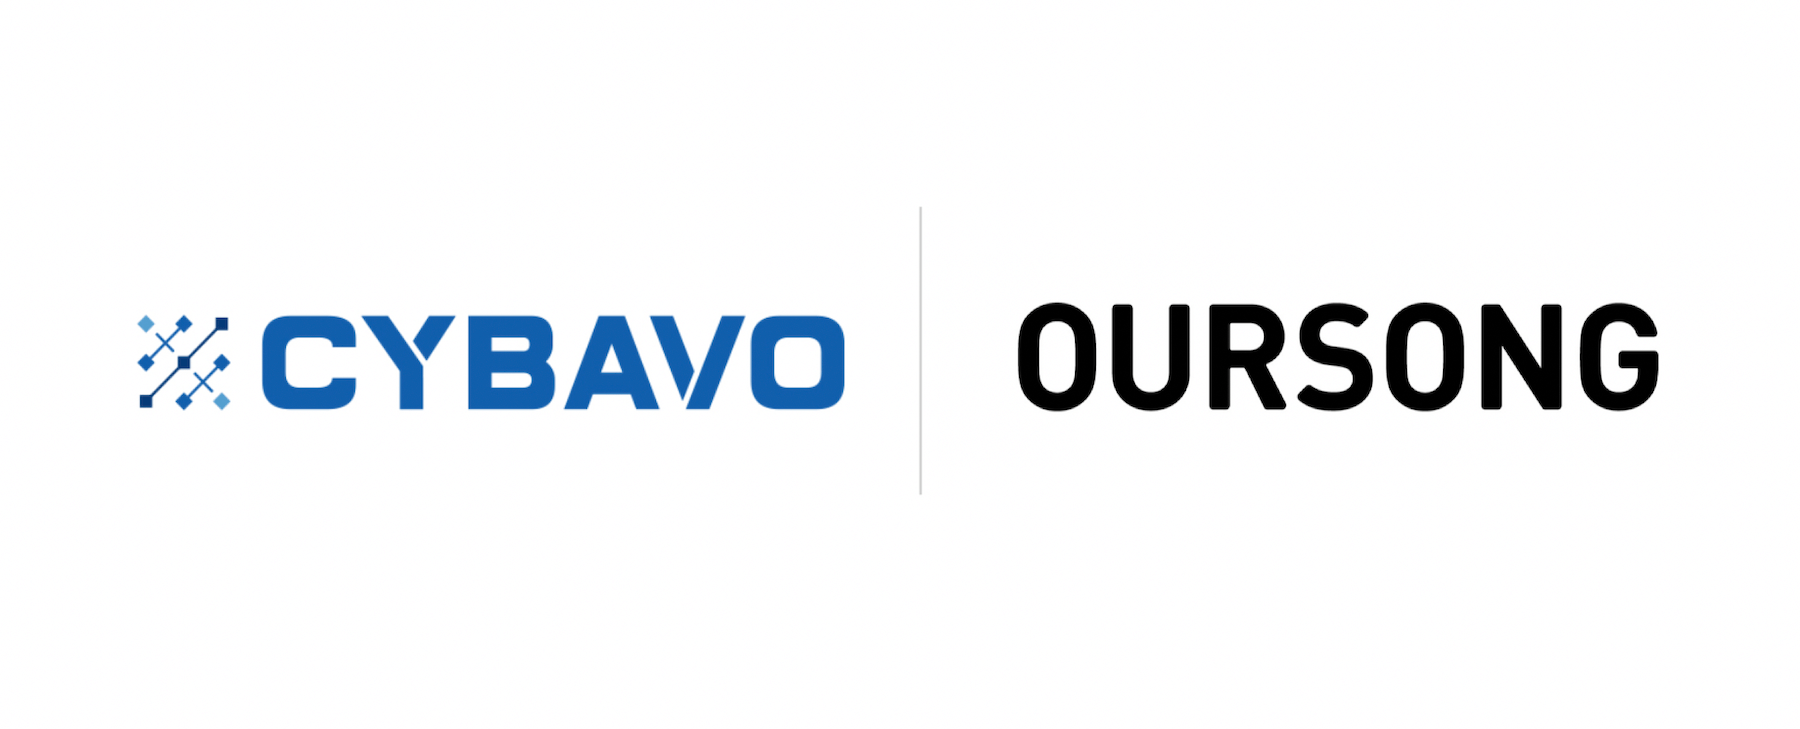 CYBAVO_OURSONG_Logos